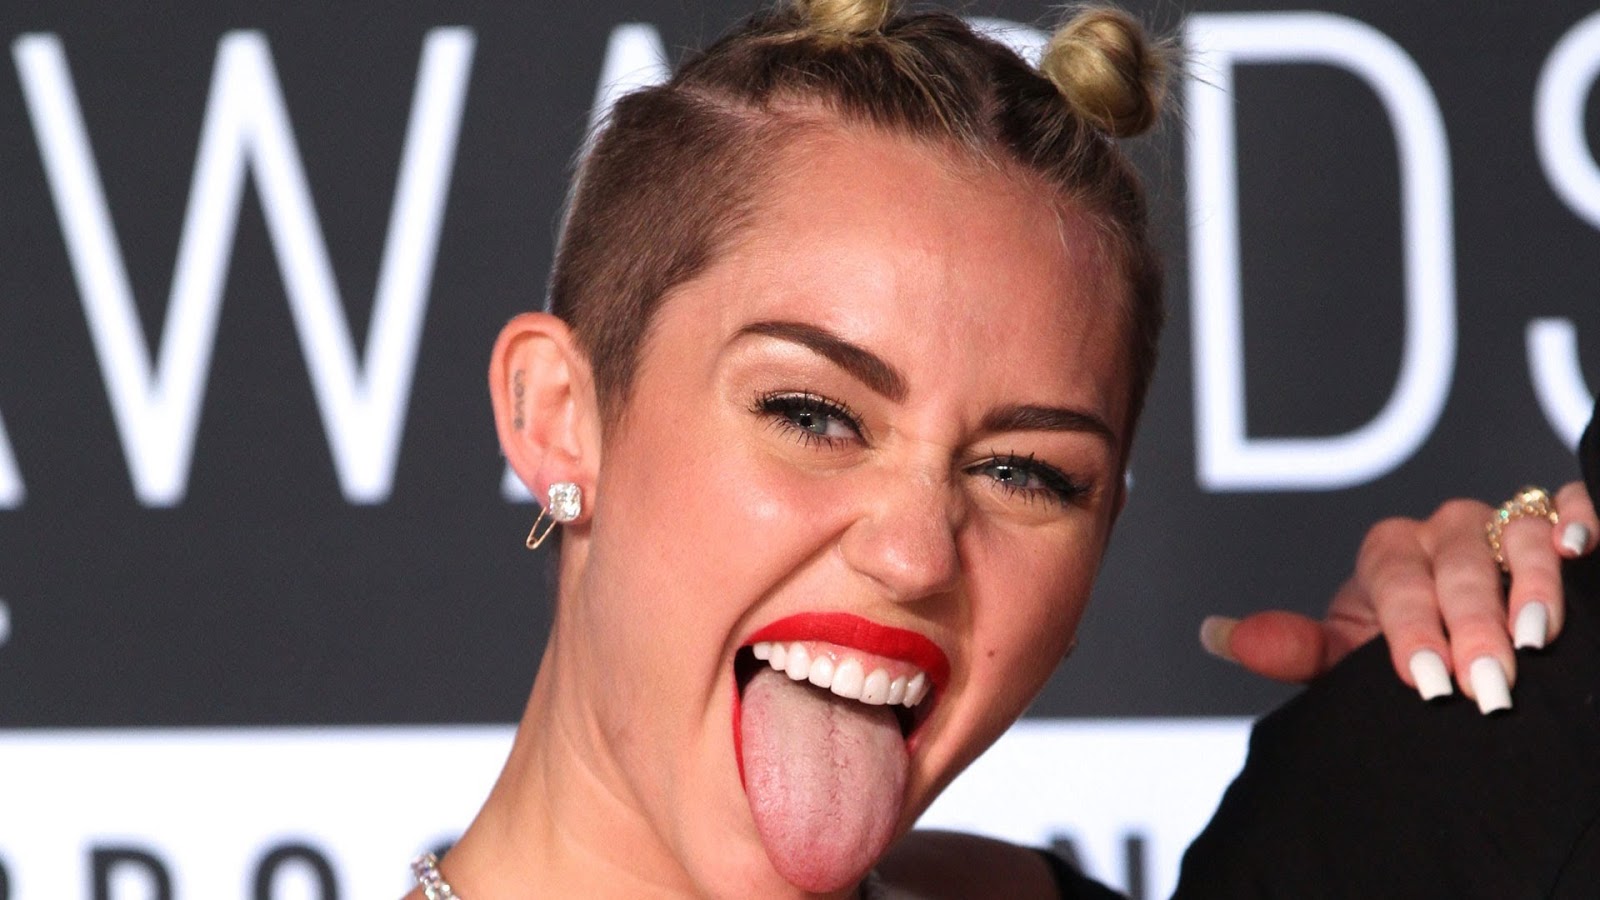 Görende Miley Cyrus hayatını anlatıyoruz sanar videoyu izlediğinizde ne dem...